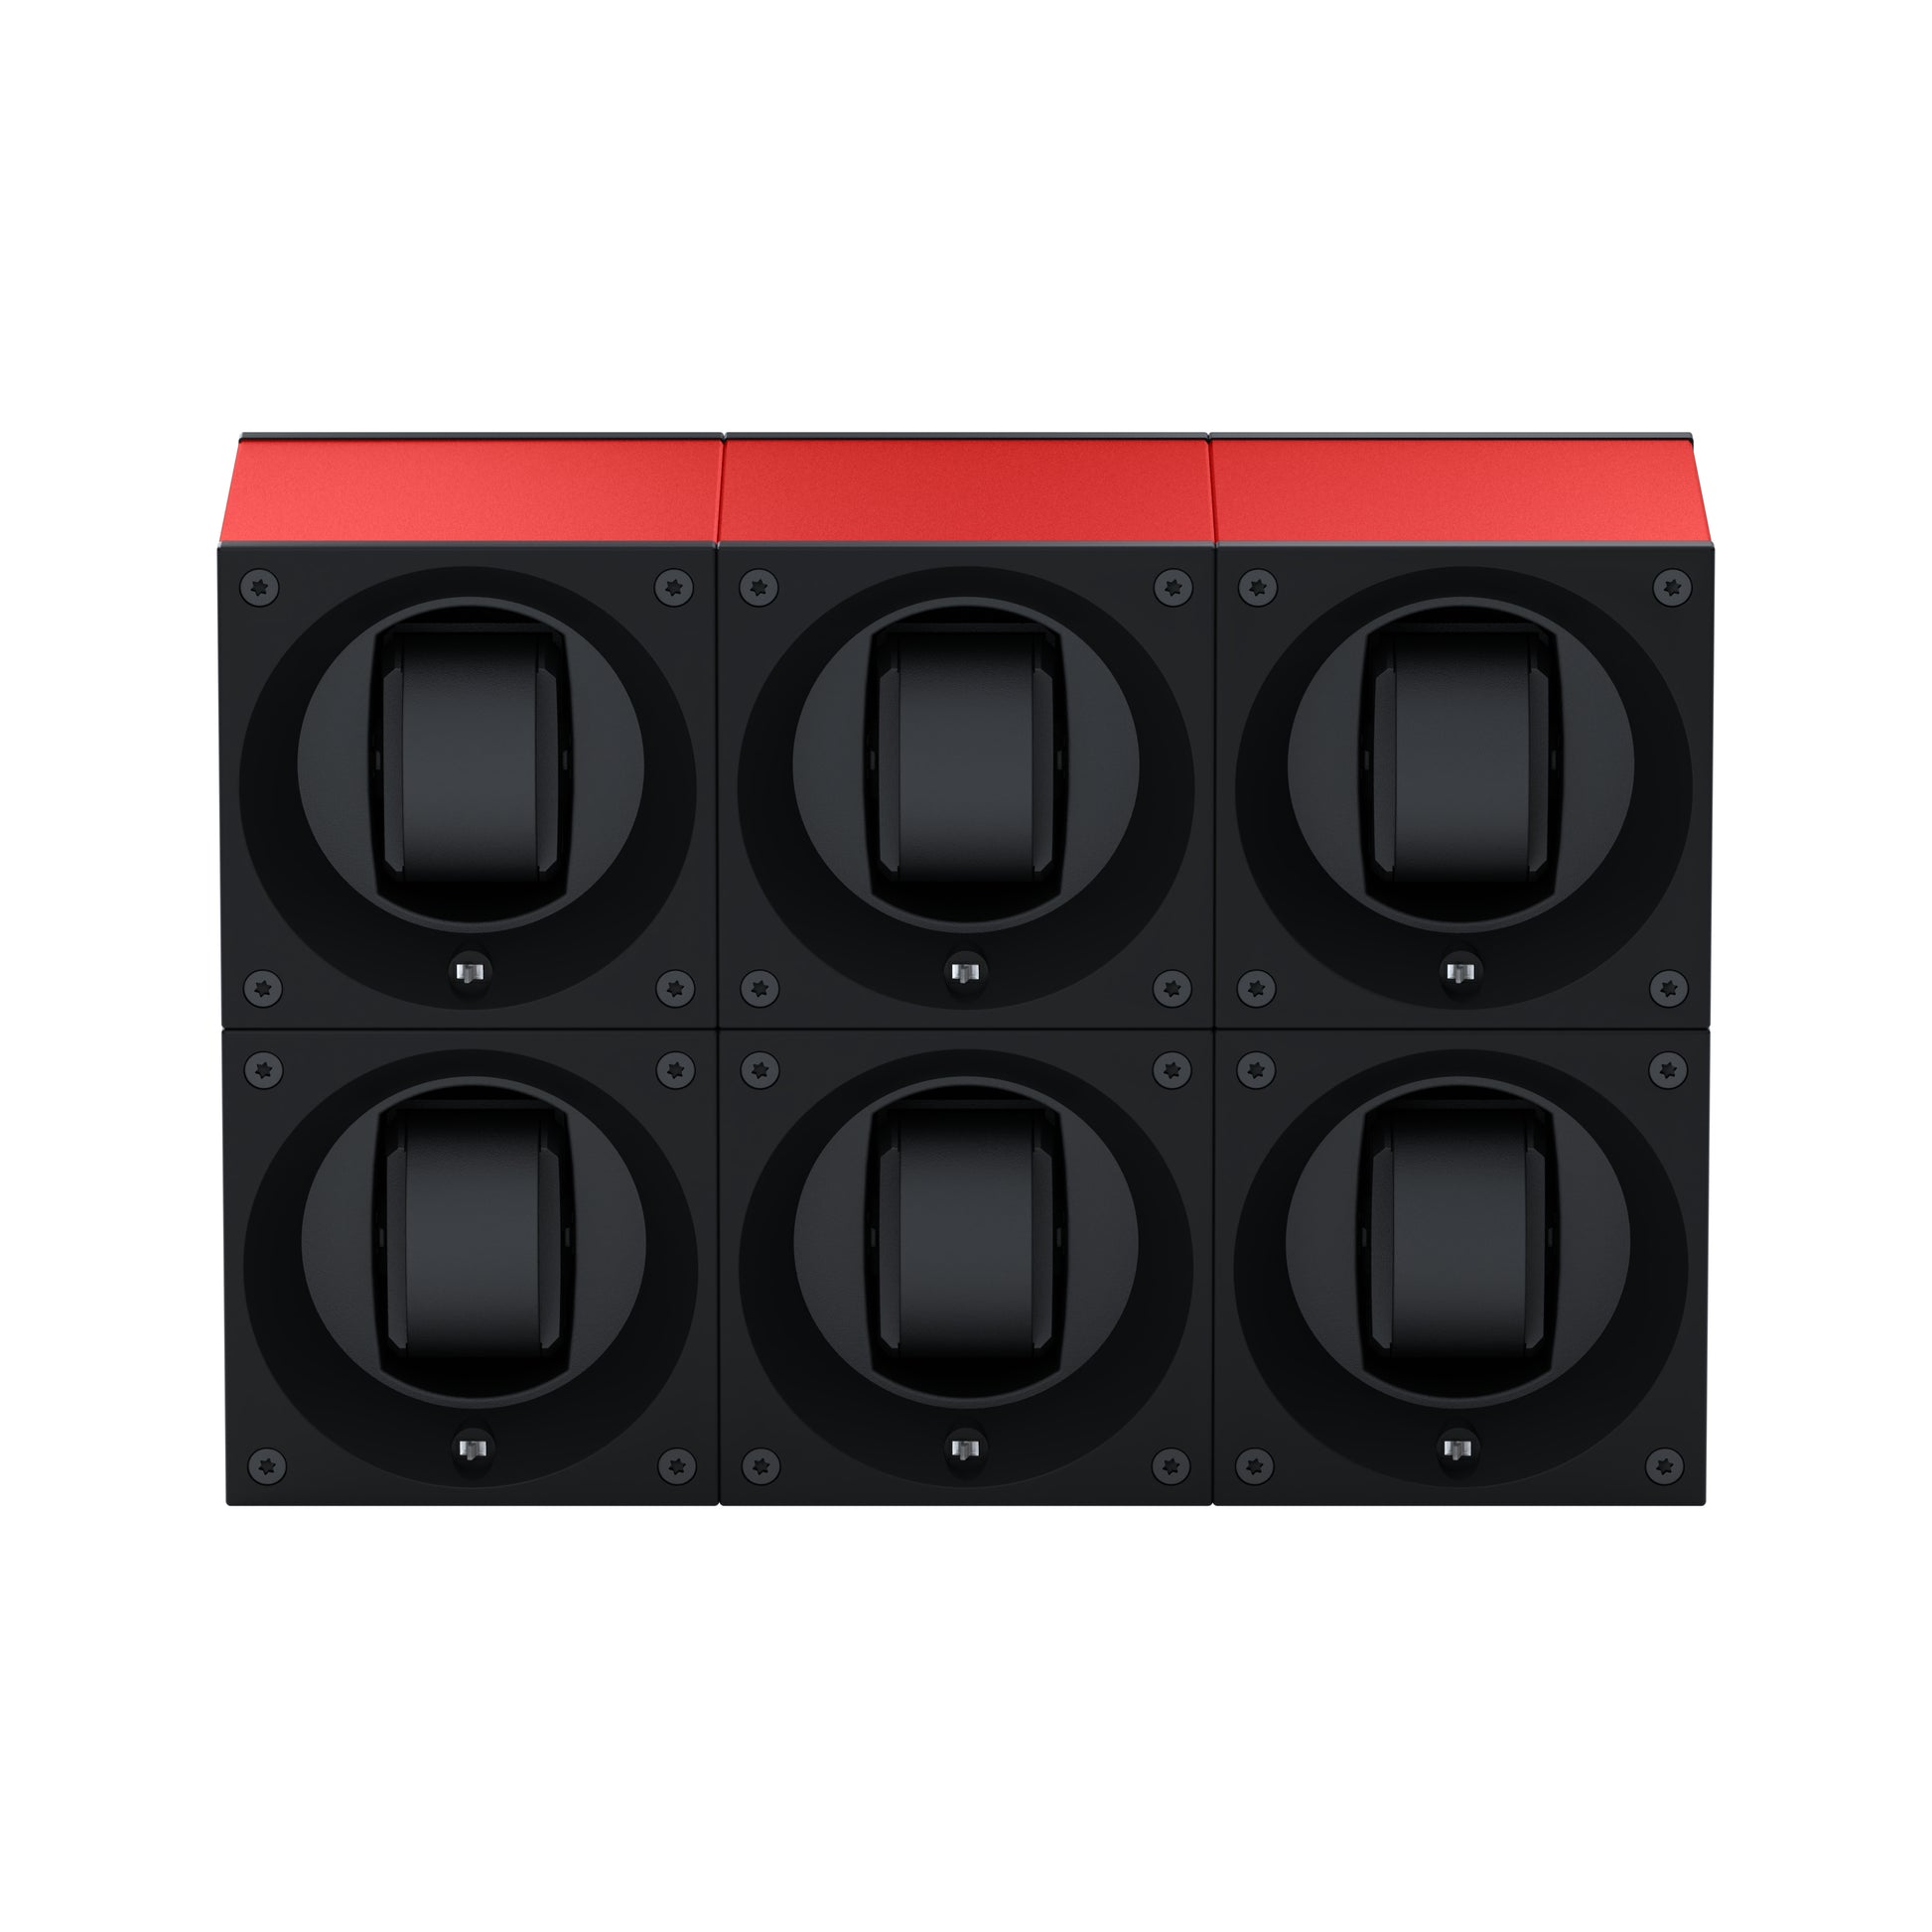 Masterbox 6 montres Aluminium Rouge : écrin rotatif pour montre automatique